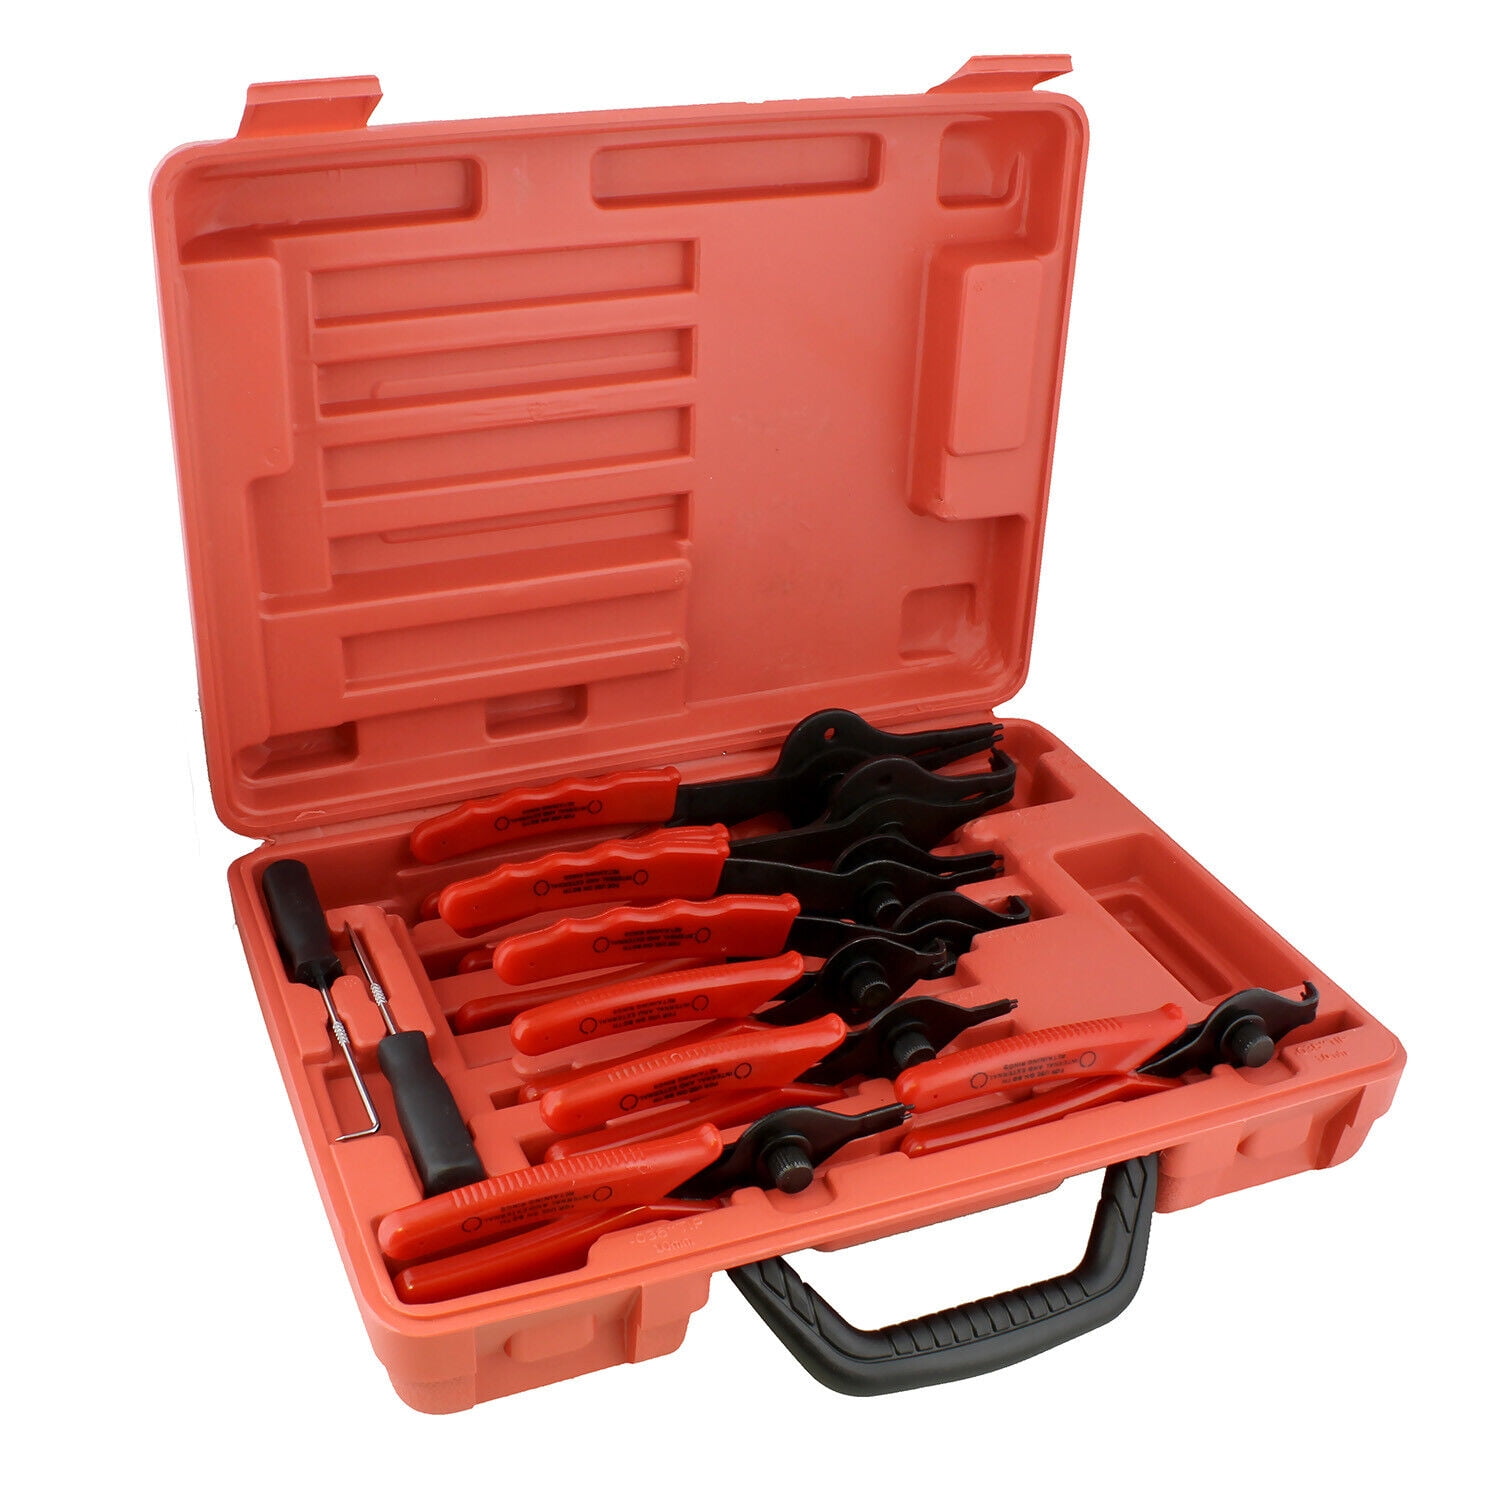 Saker 5-piece plier tool set, Interchangeable Jaw Head Clip Pliers